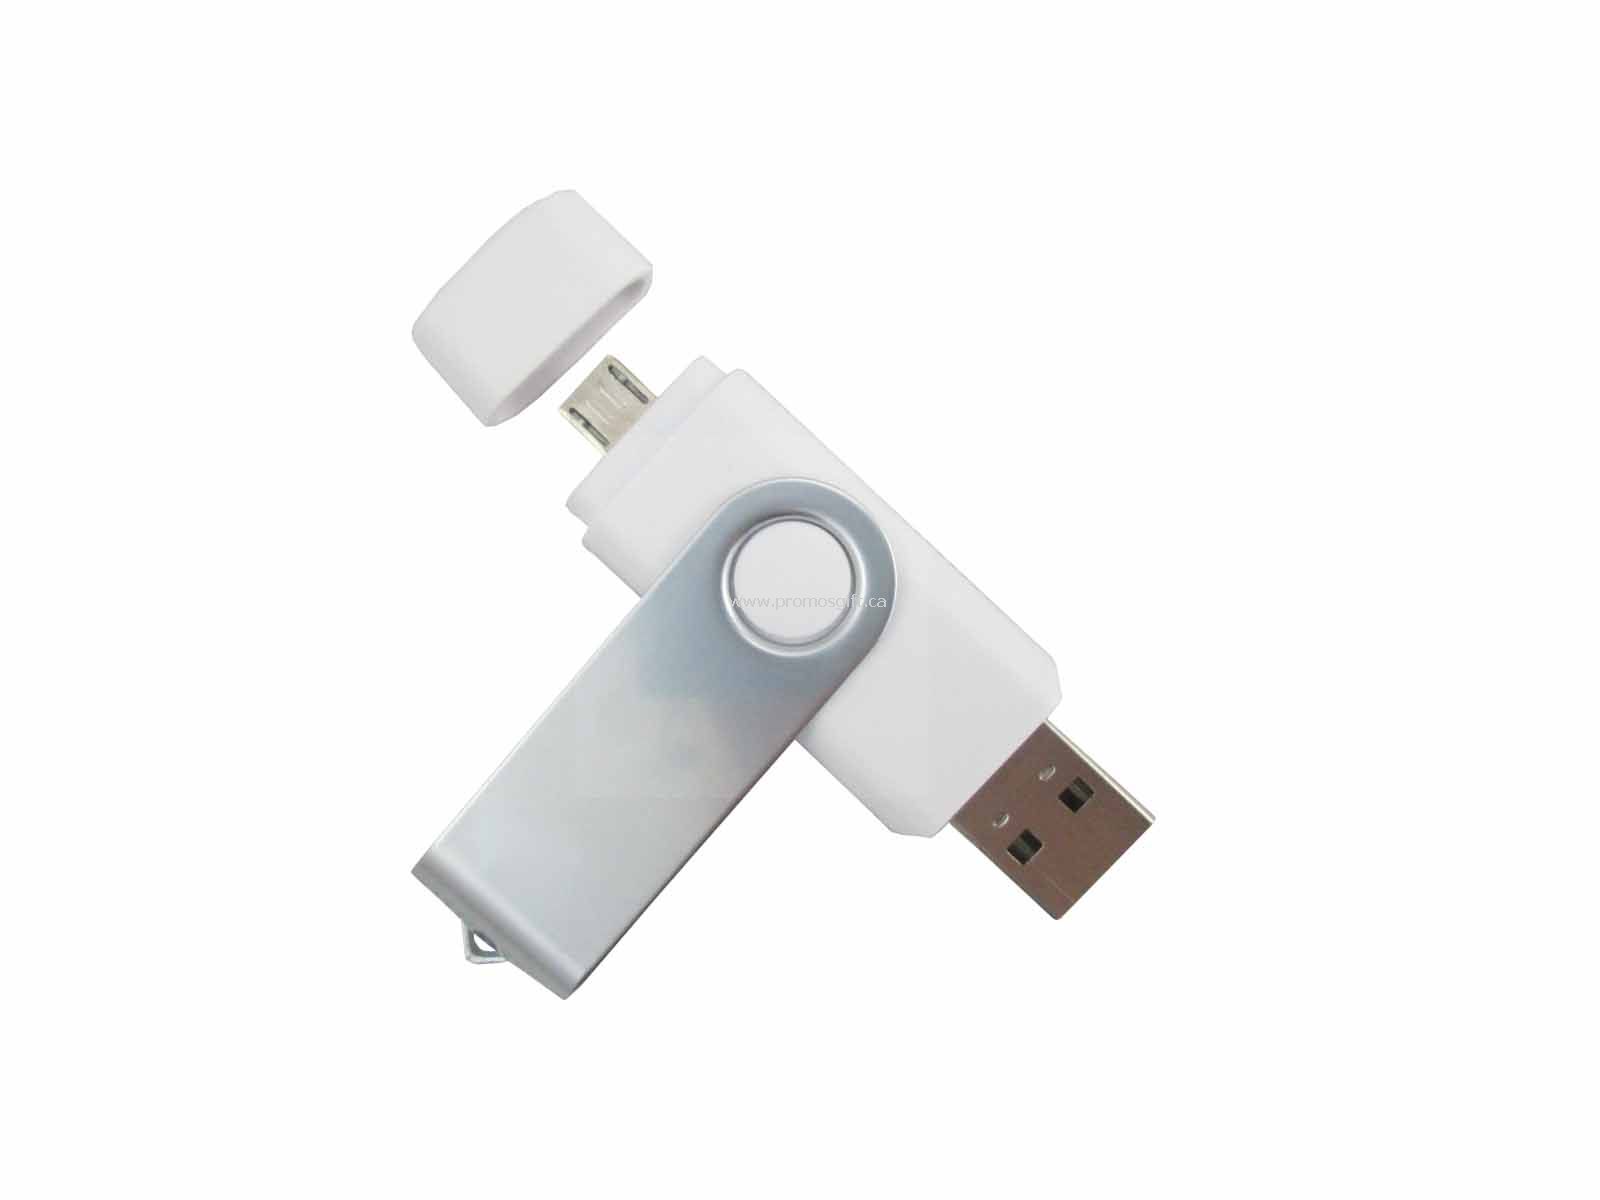 Swivel OTG USB Flash Drive